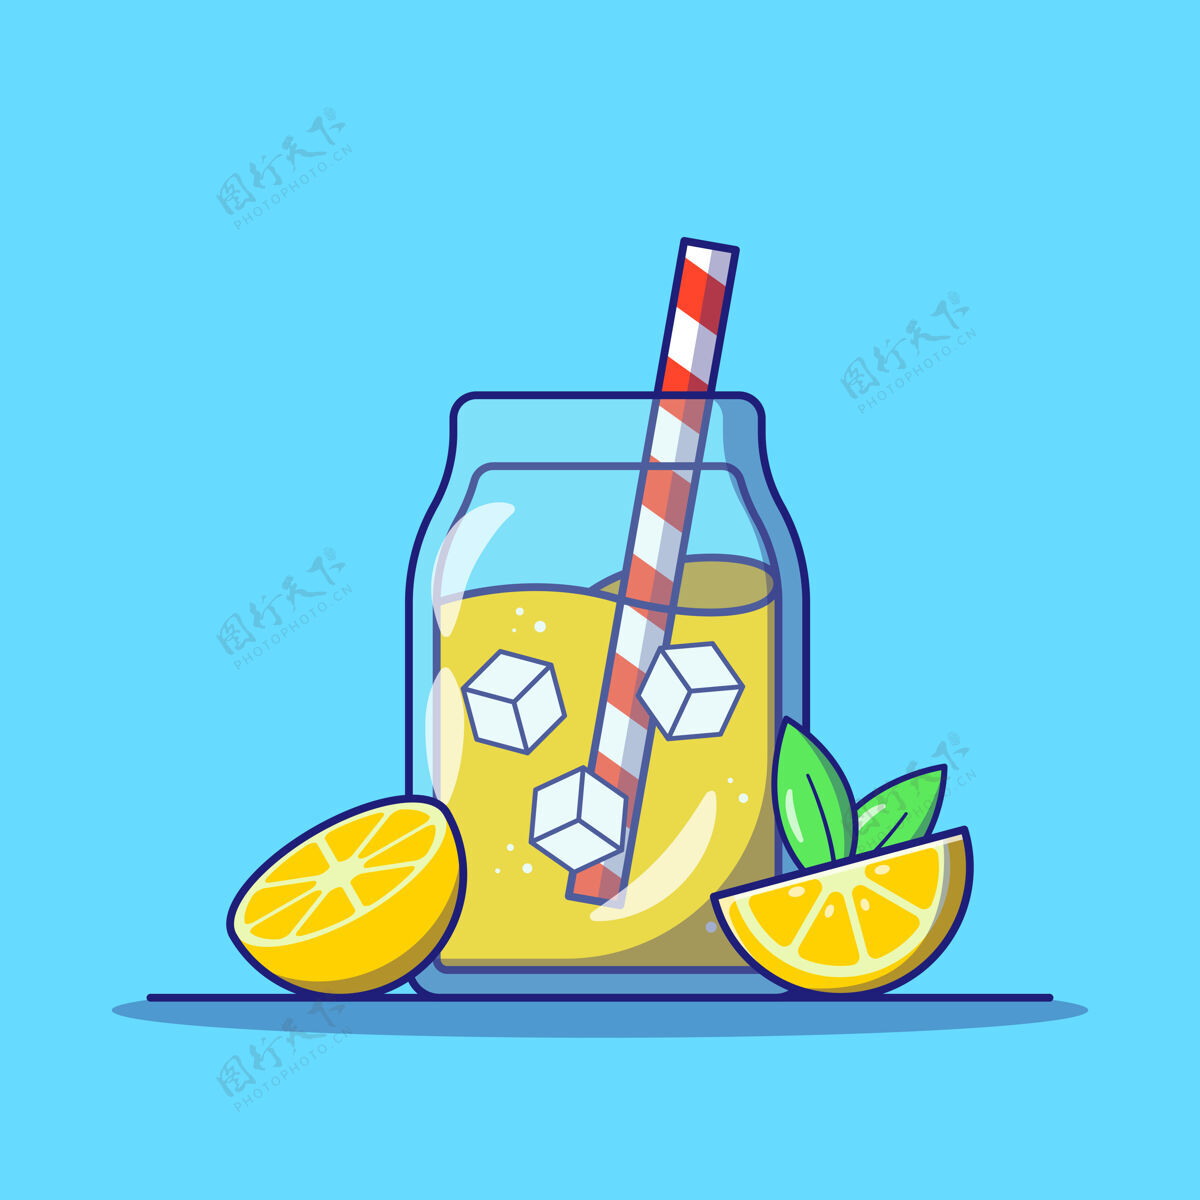 柠檬水在一个玻璃罐里放着柠檬片和条纹稻草的柠檬水夏天概念轮廓